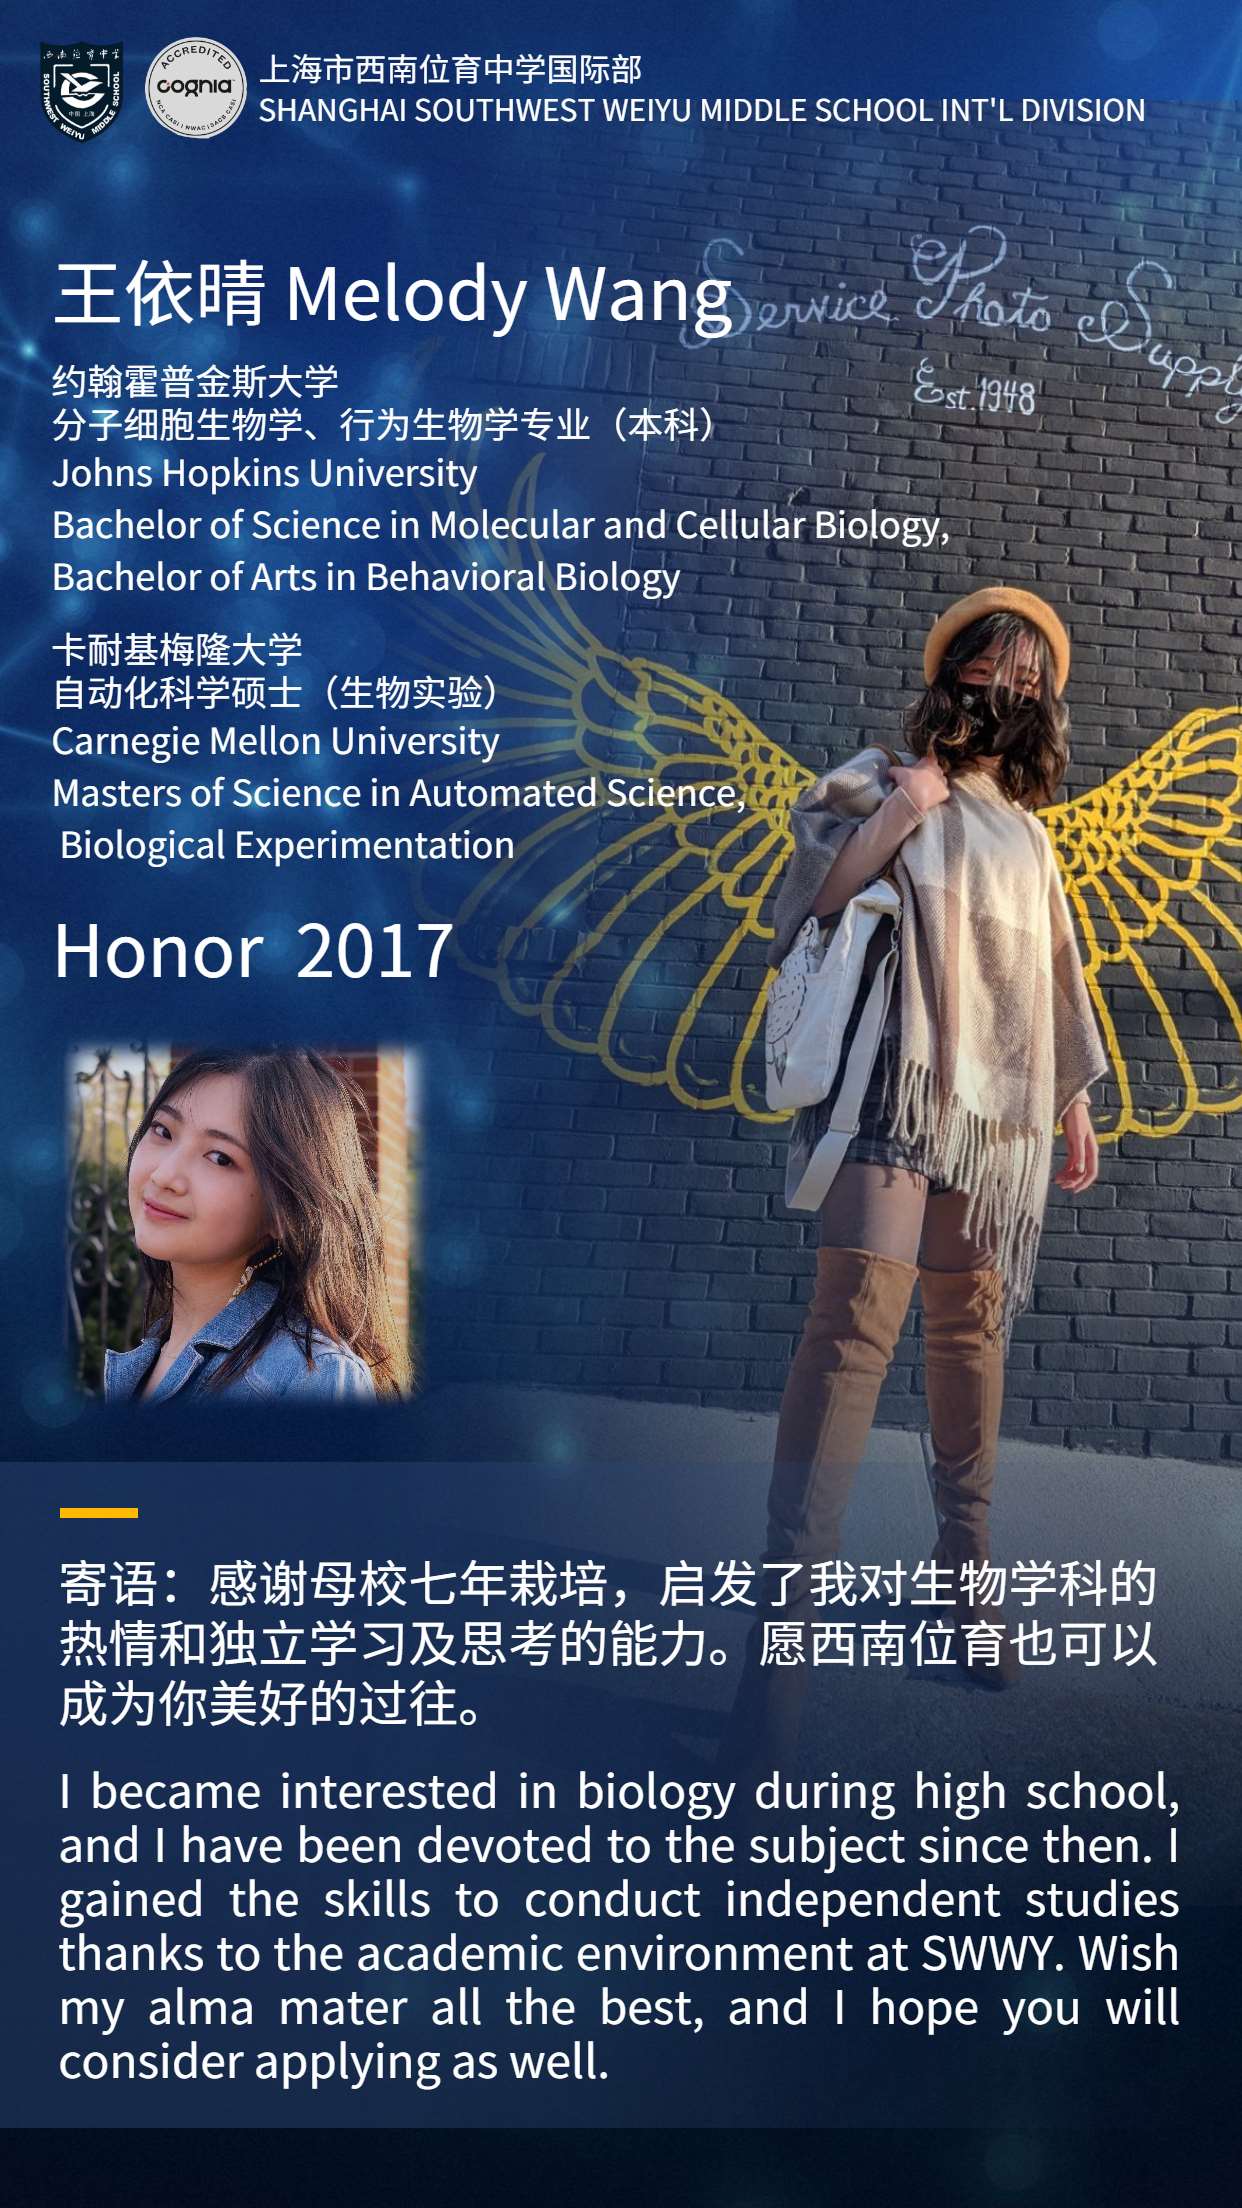 Honor 2017 (2)_Jc.jpg